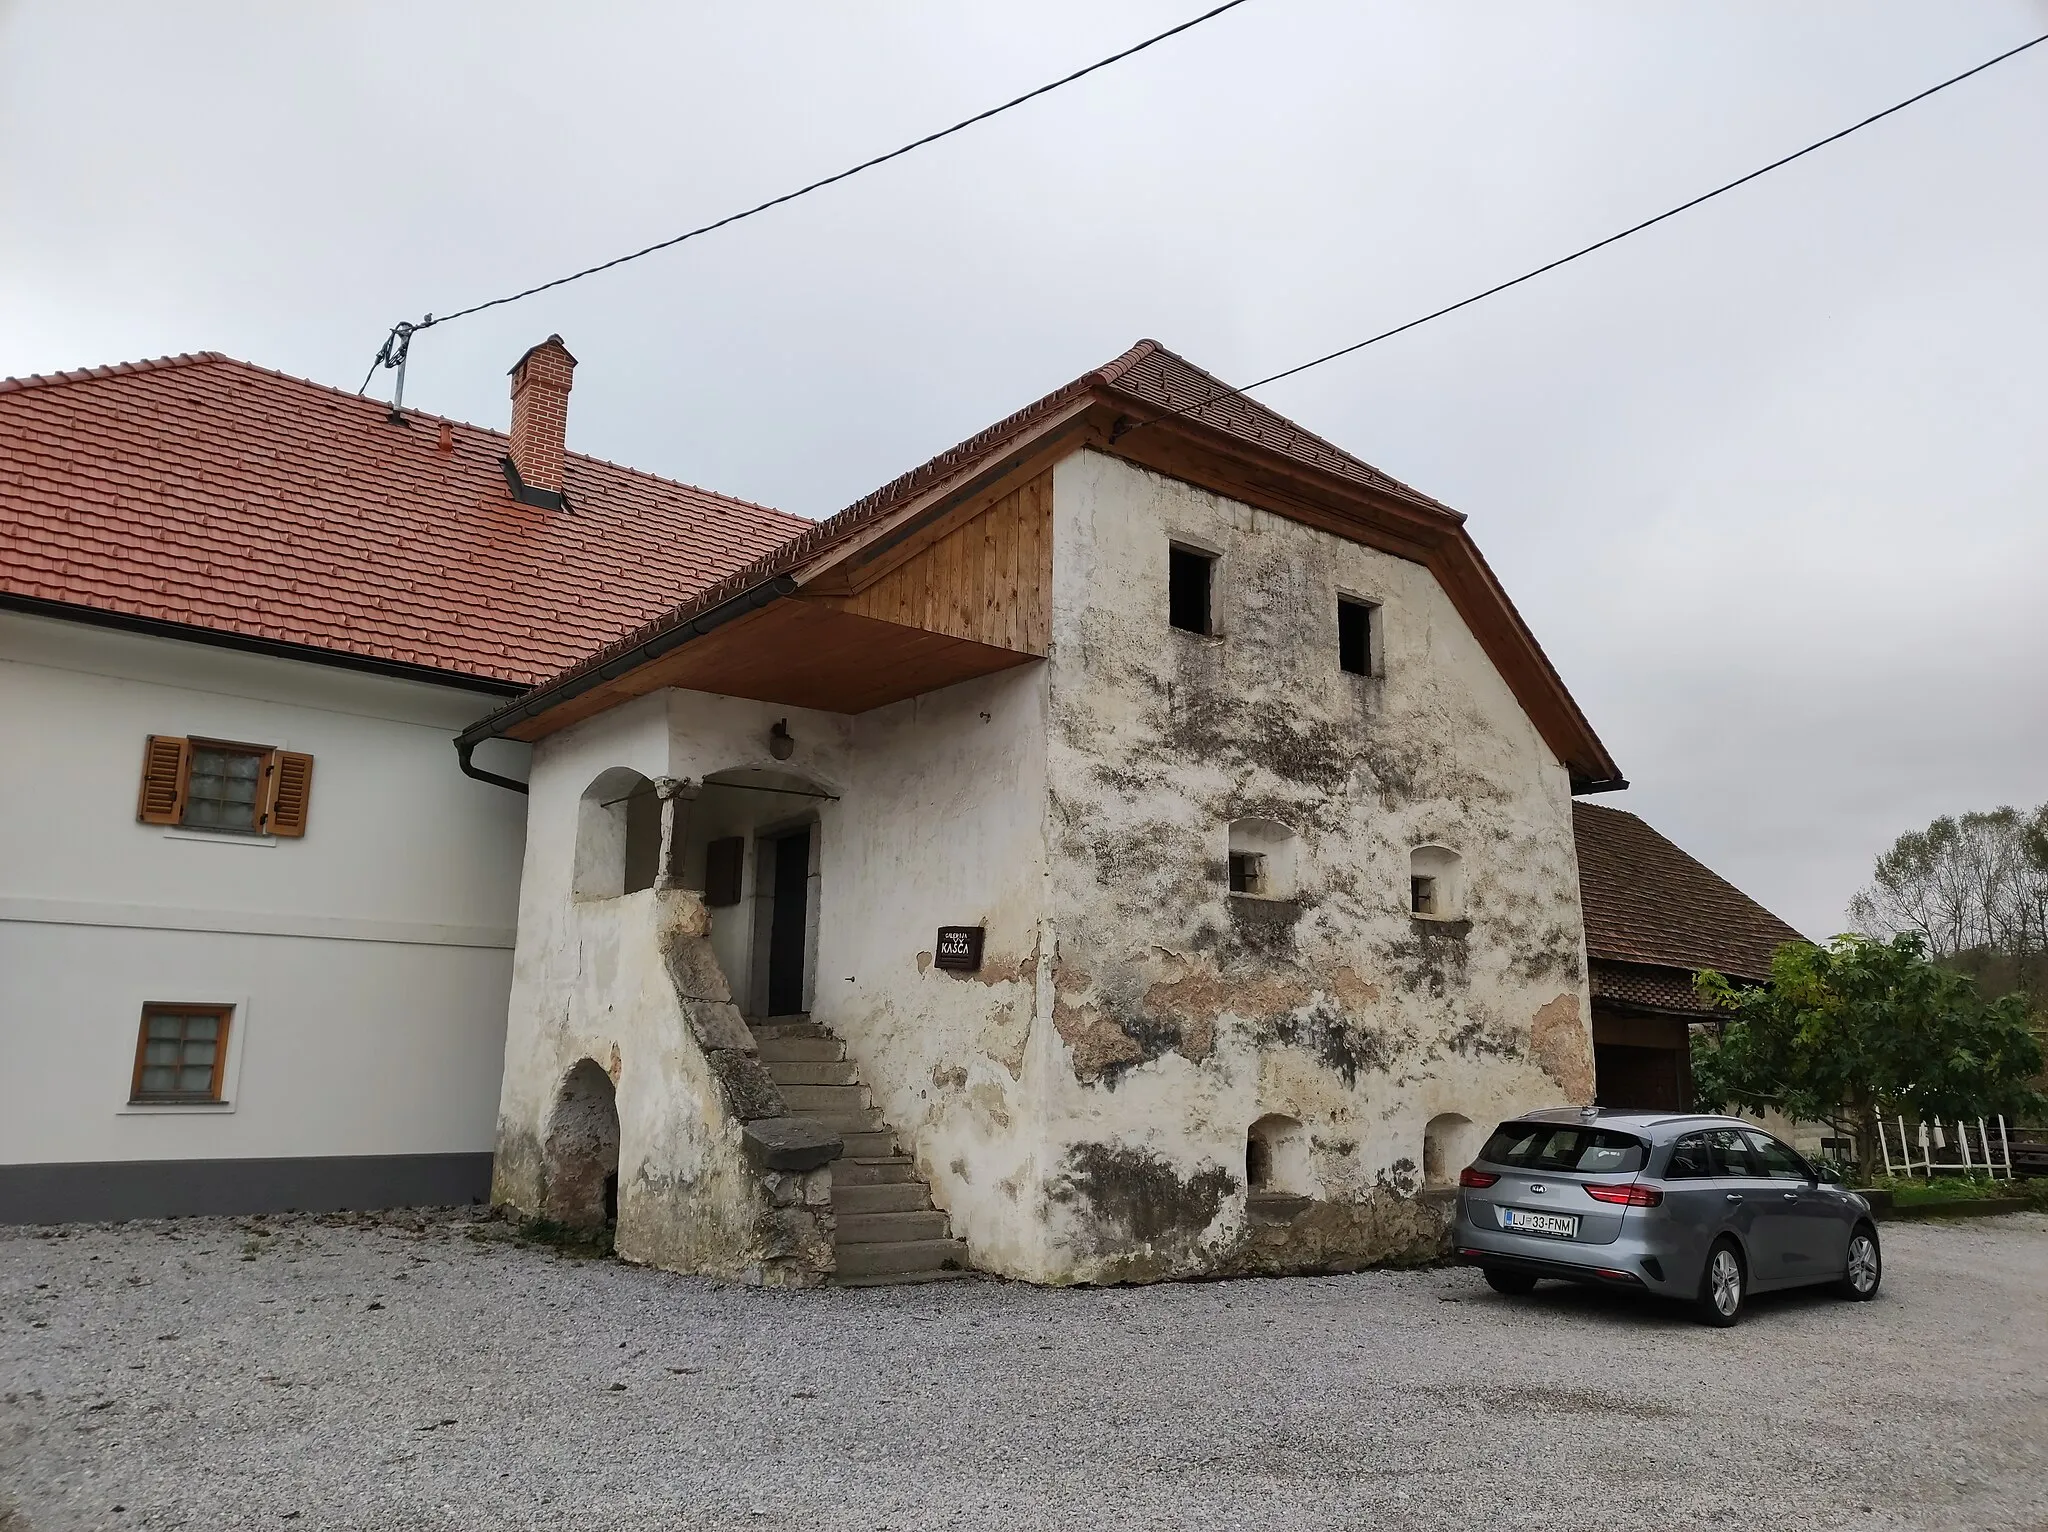 Photo showing: Miklč granary (sl: Miklčeva kašča) in Verd.